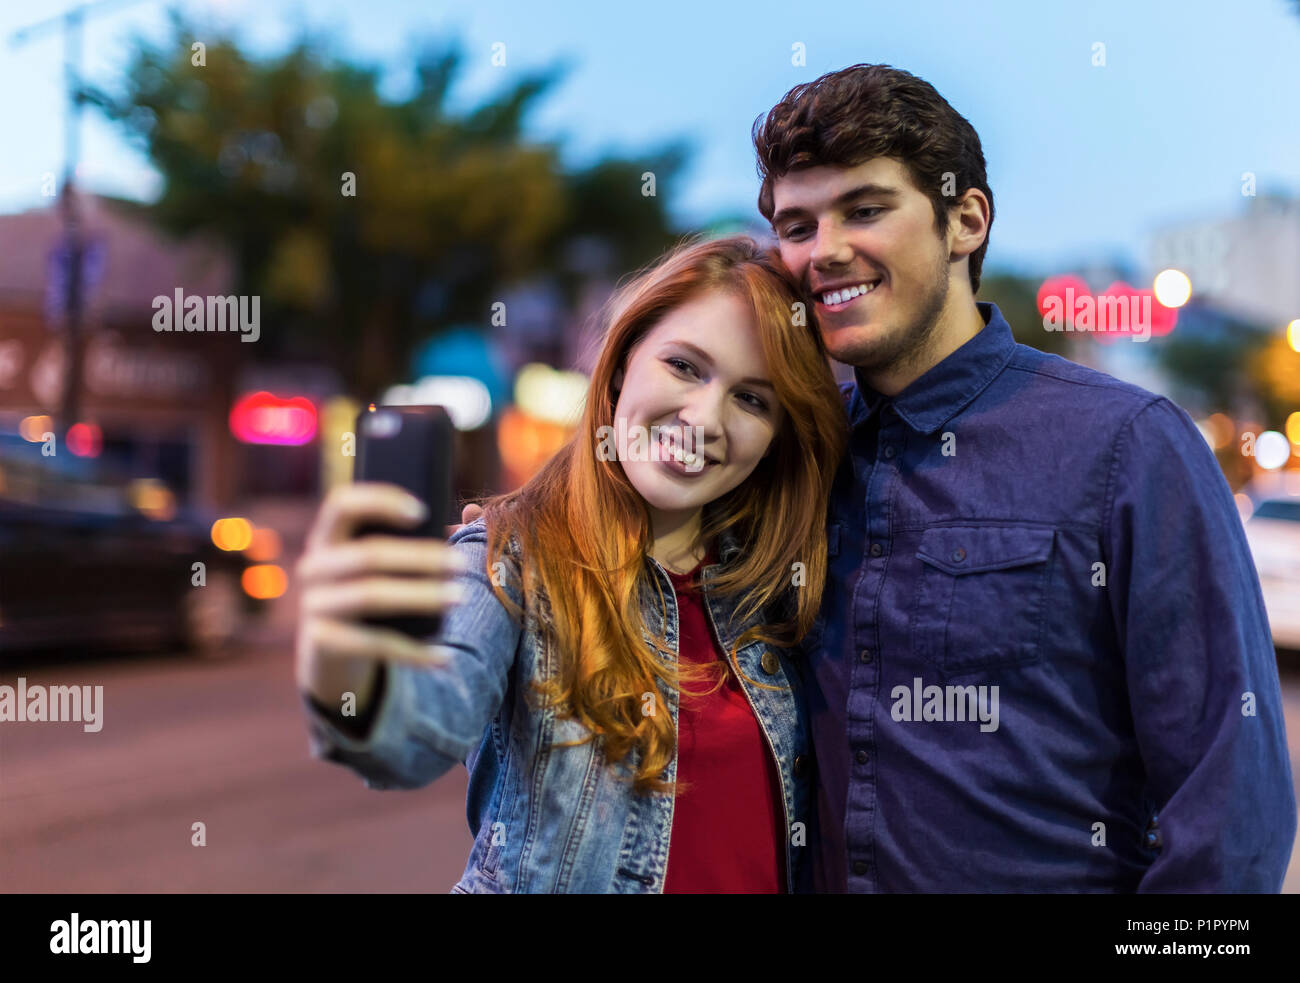 Una joven pareja están junto a una calle de la ciudad al atardecer tomando un auto-retrato con un teléfono inteligente, Edmonton, Alberta, Canadá Foto de stock